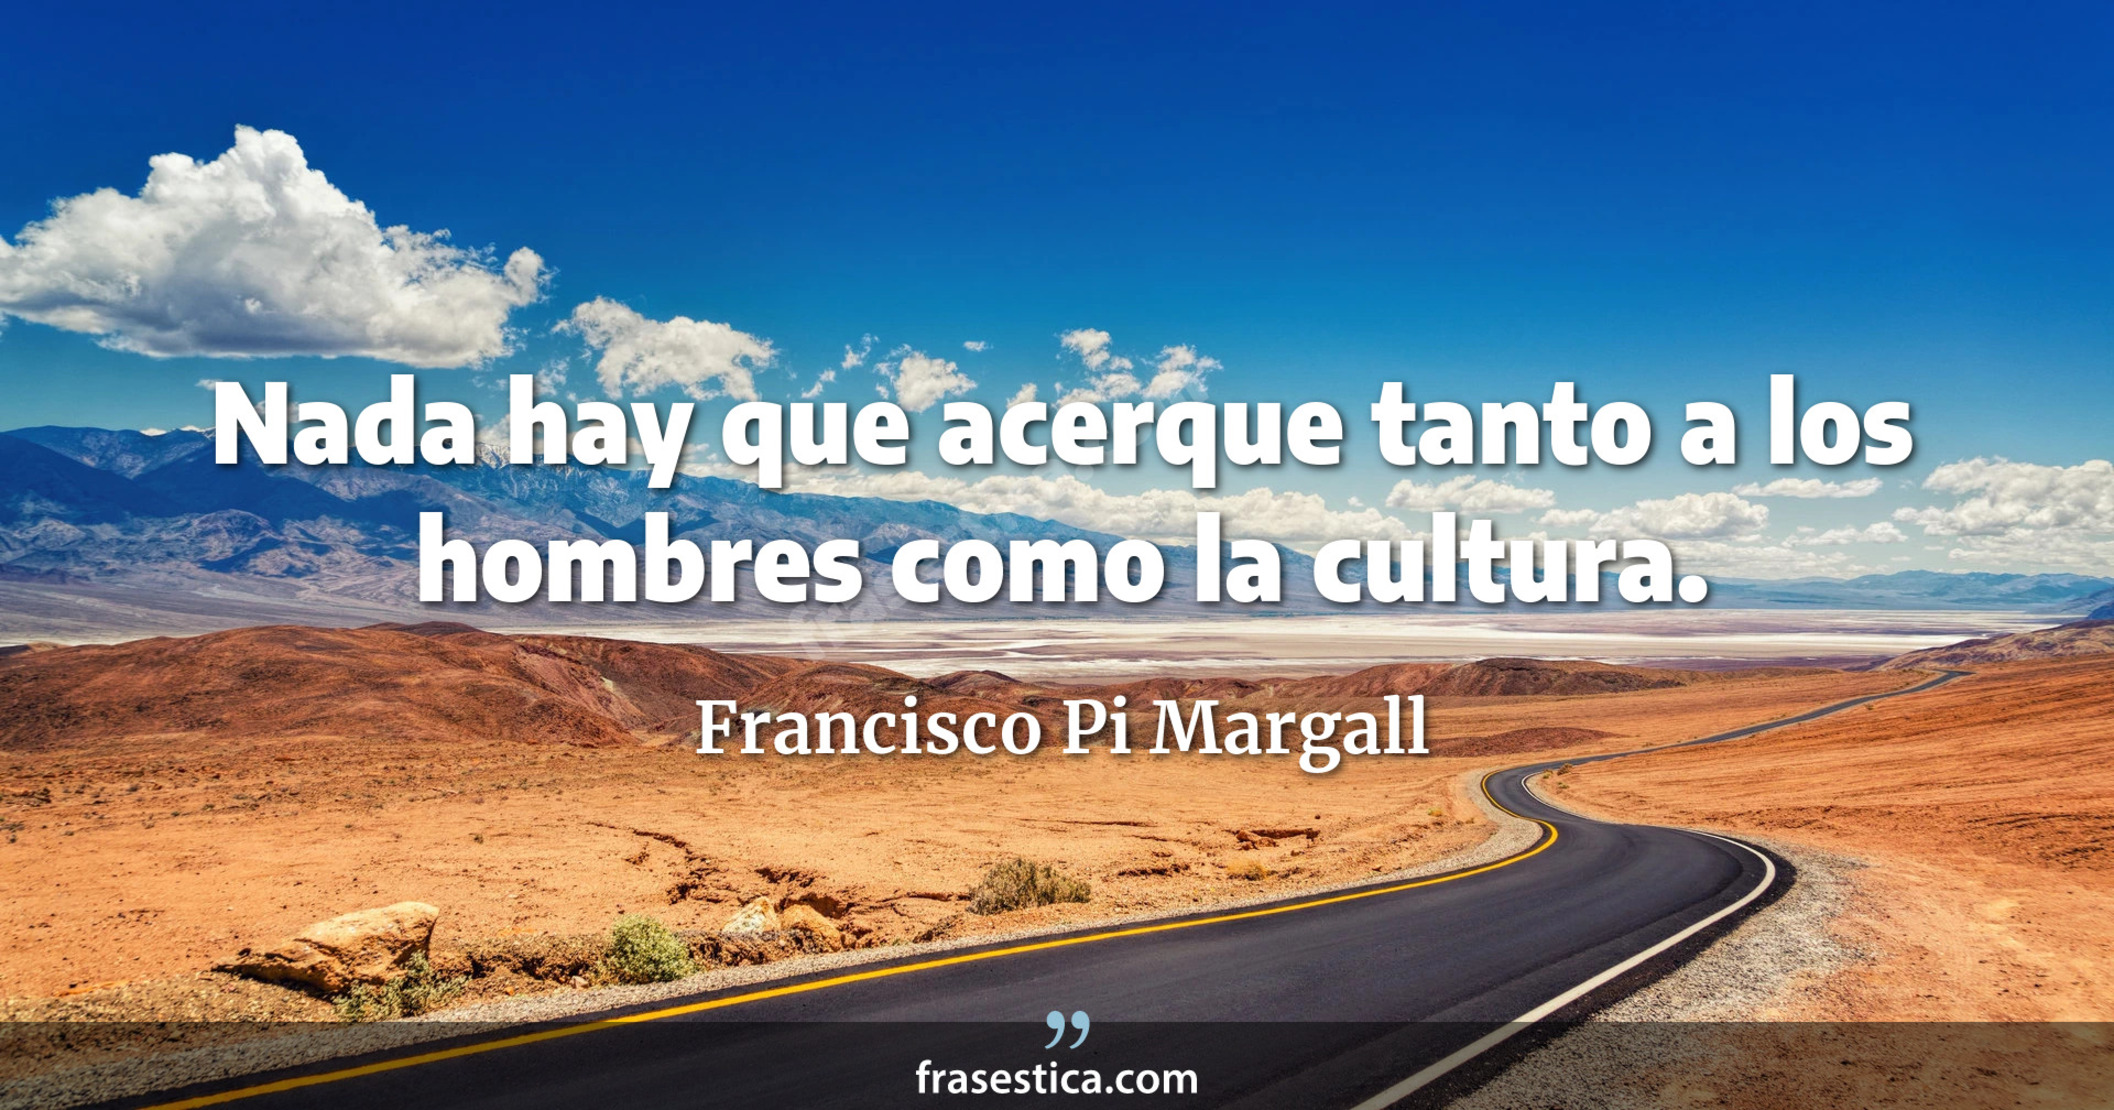 Nada hay que acerque tanto a los hombres como la cultura. - Francisco Pi Margall